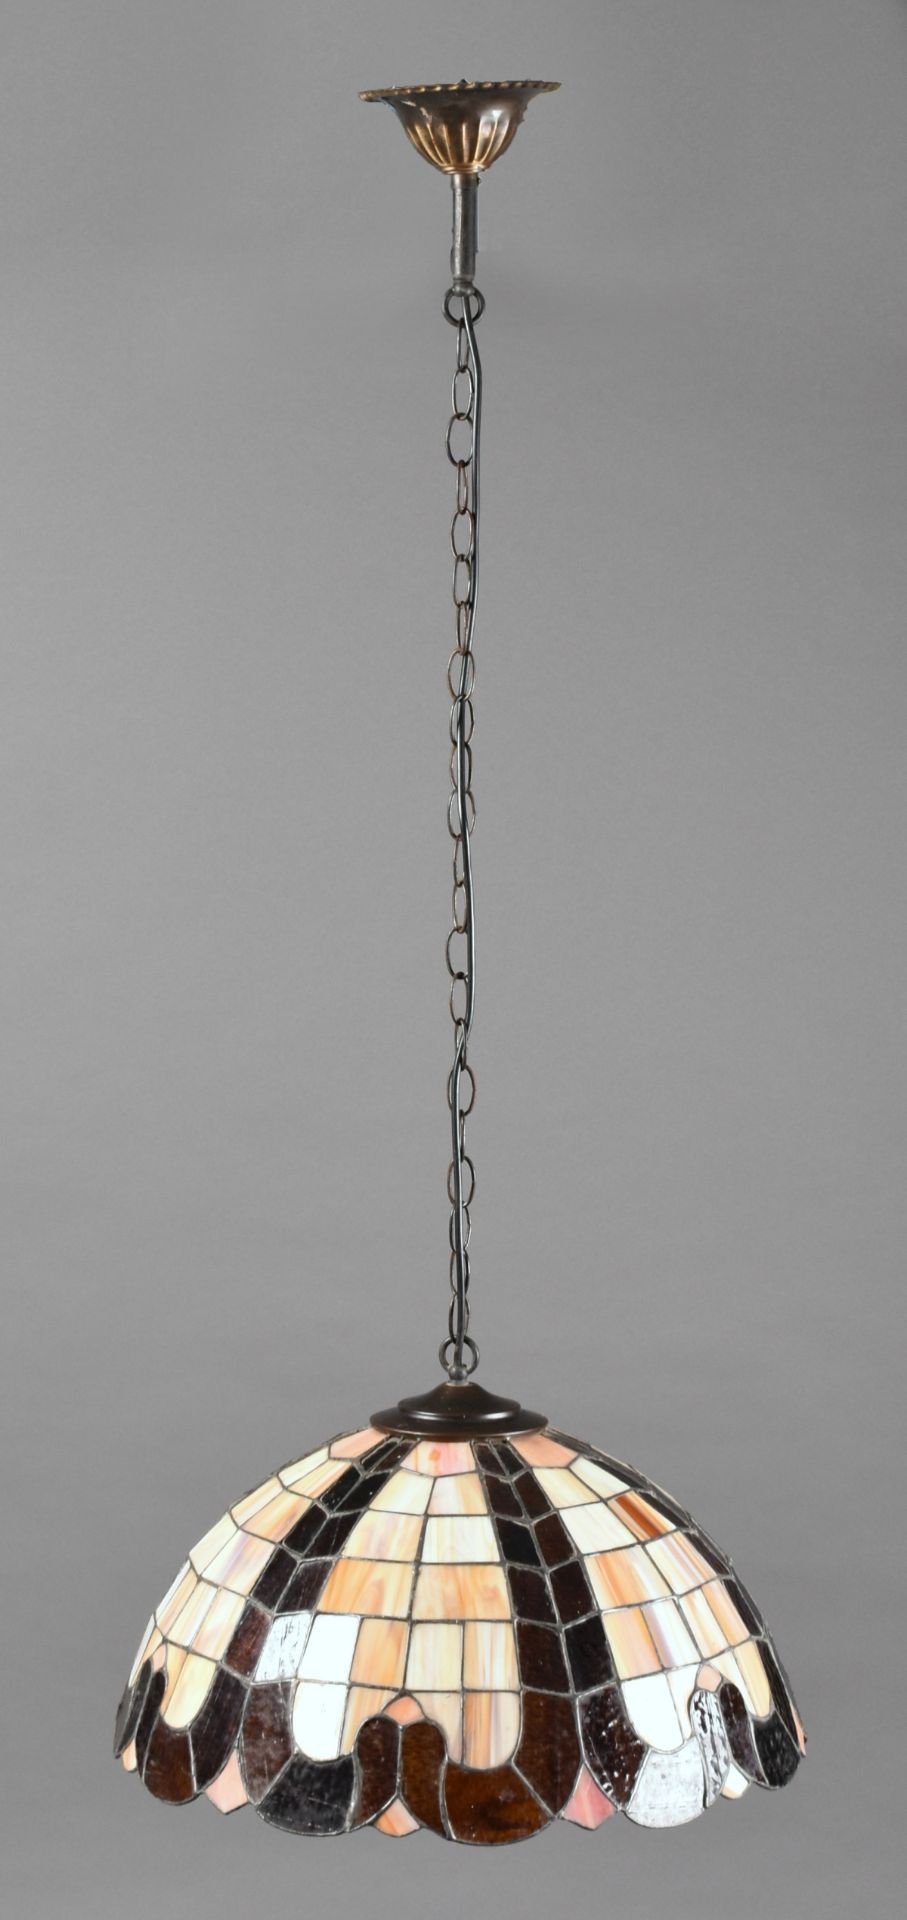 Deckenleuchte halbrunder Schirm im Tiffany-Stil, polychromes Glas, je 2 schmale geschwungene bräun - Bild 2 aus 3